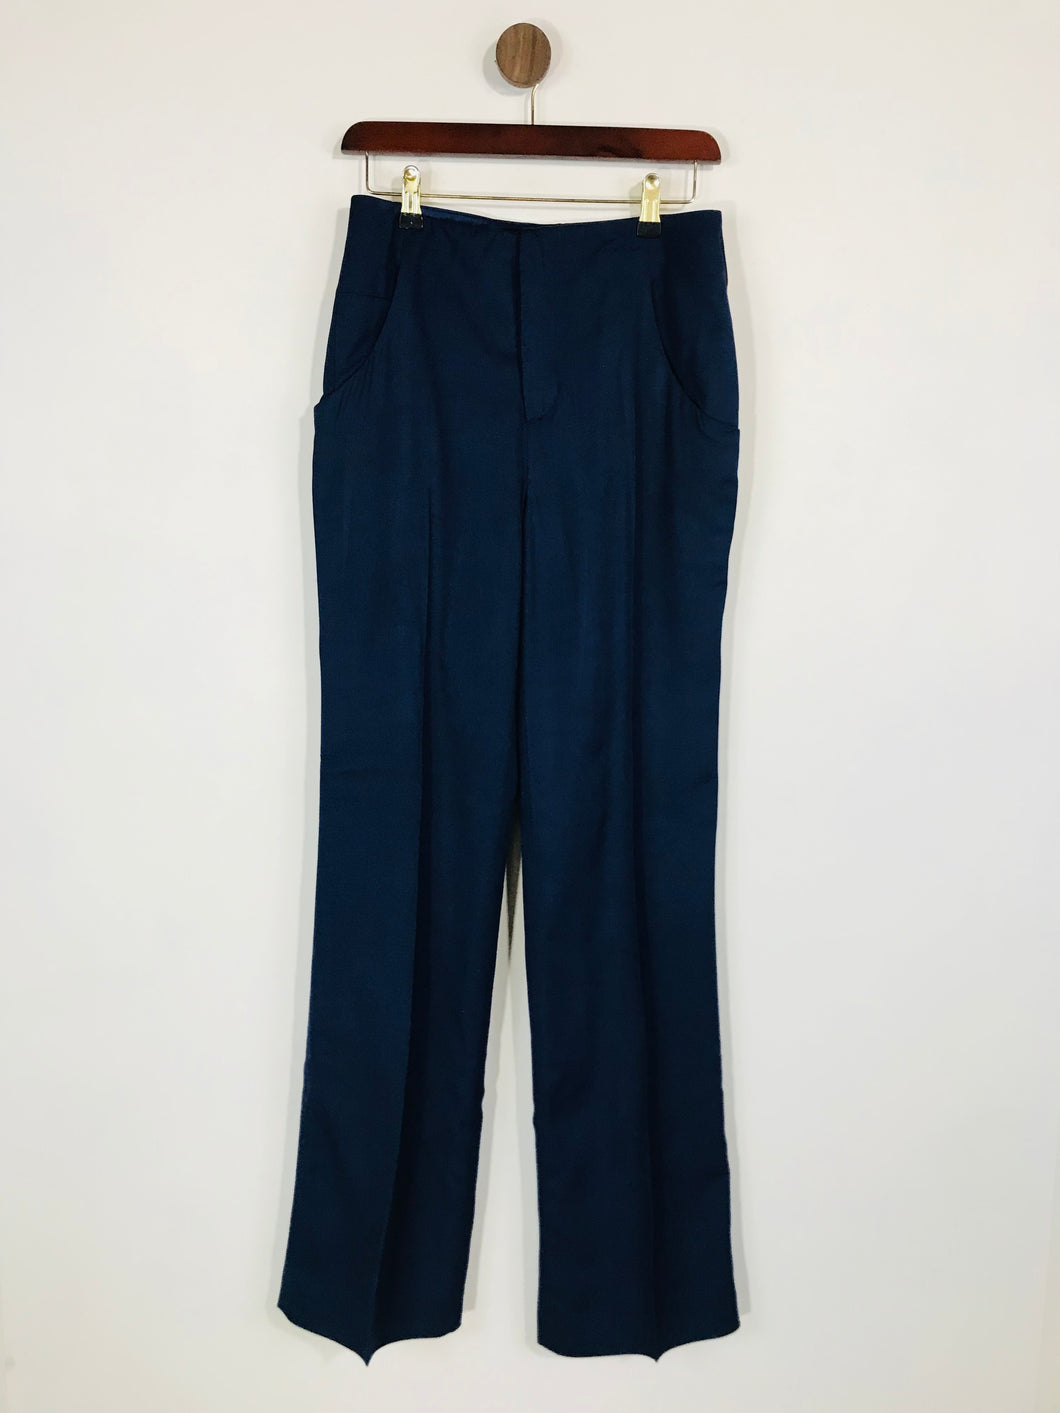 Zara Women's Flared High Waist Chinos Trousers | S UK8 | Blue